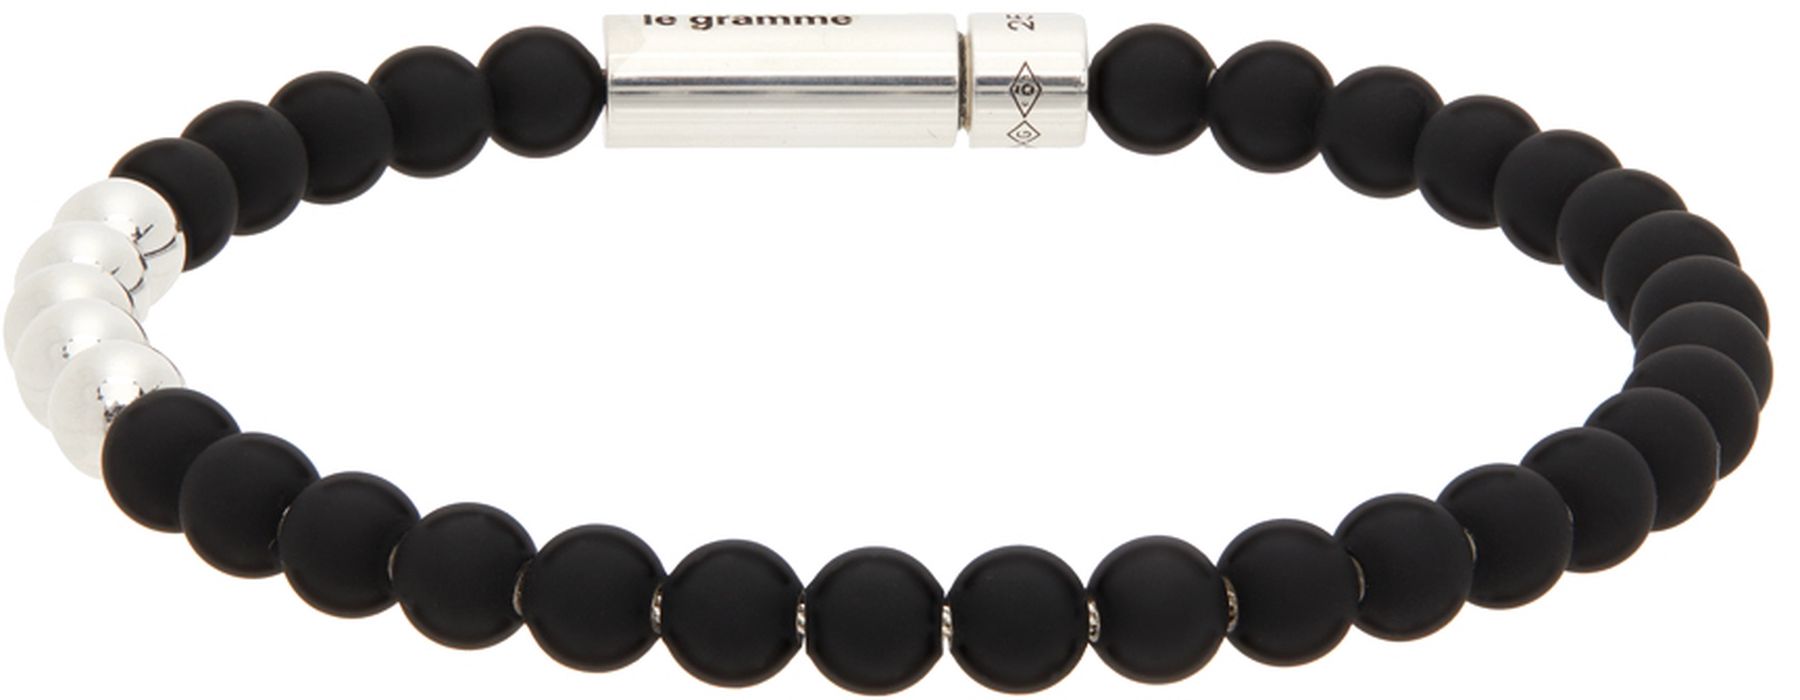 Le Gramme Black & Silver 'Le 25 Grammes' Beads Bracelet